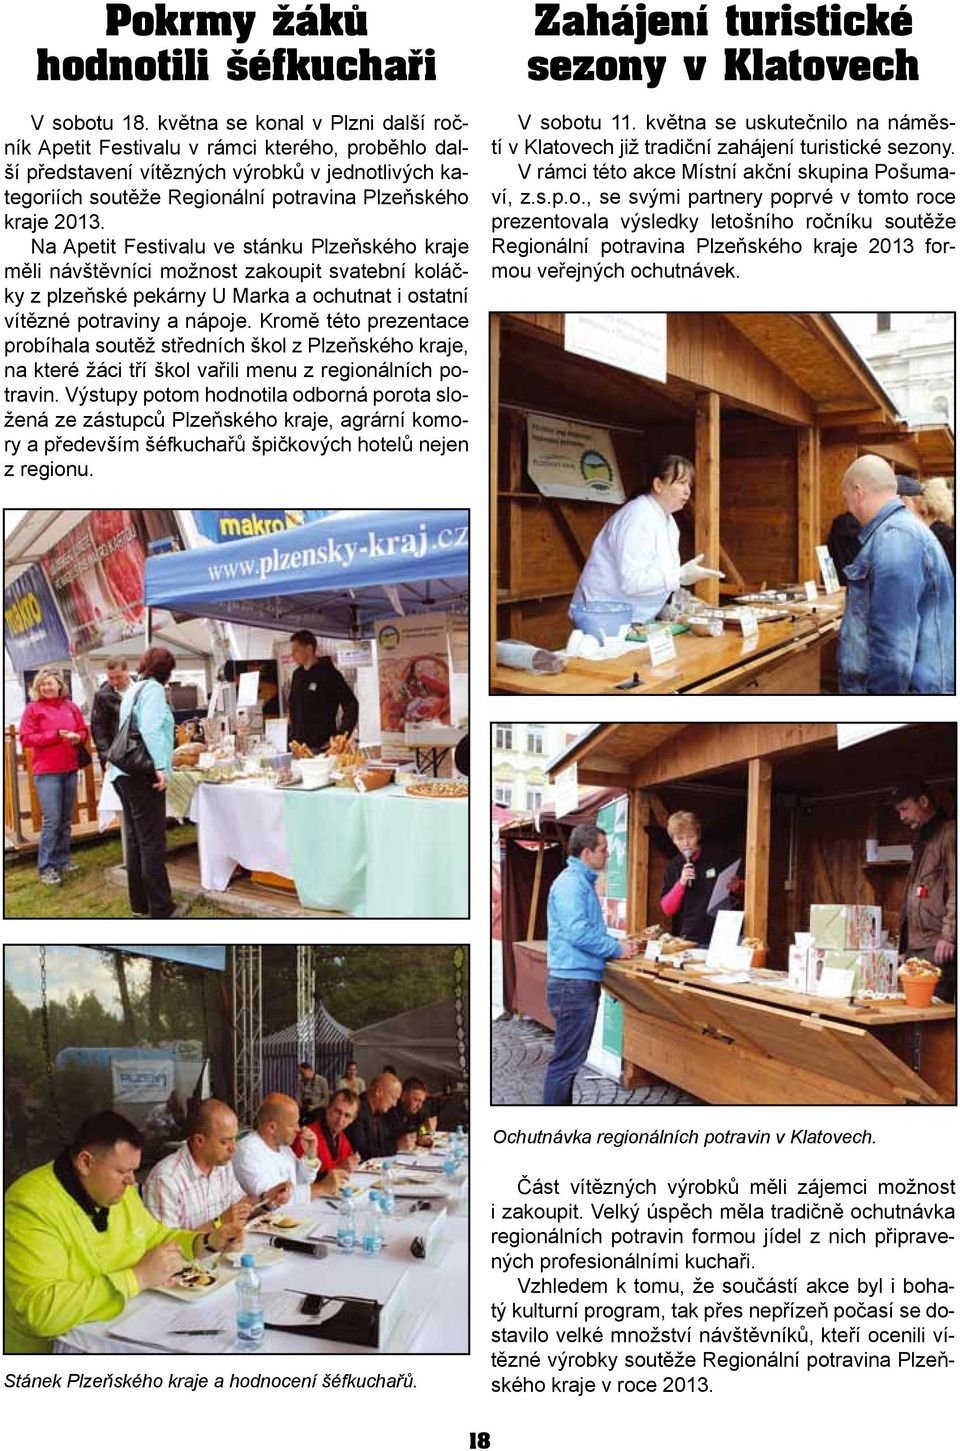 Na Apetit Festivalu ve stánku Plzeňského kraje měli návštěvníci možnost zakoupit svatební koláčky z plzeňské pekárny U Marka a ochutnat i ostatní vítězné potraviny a nápoje.